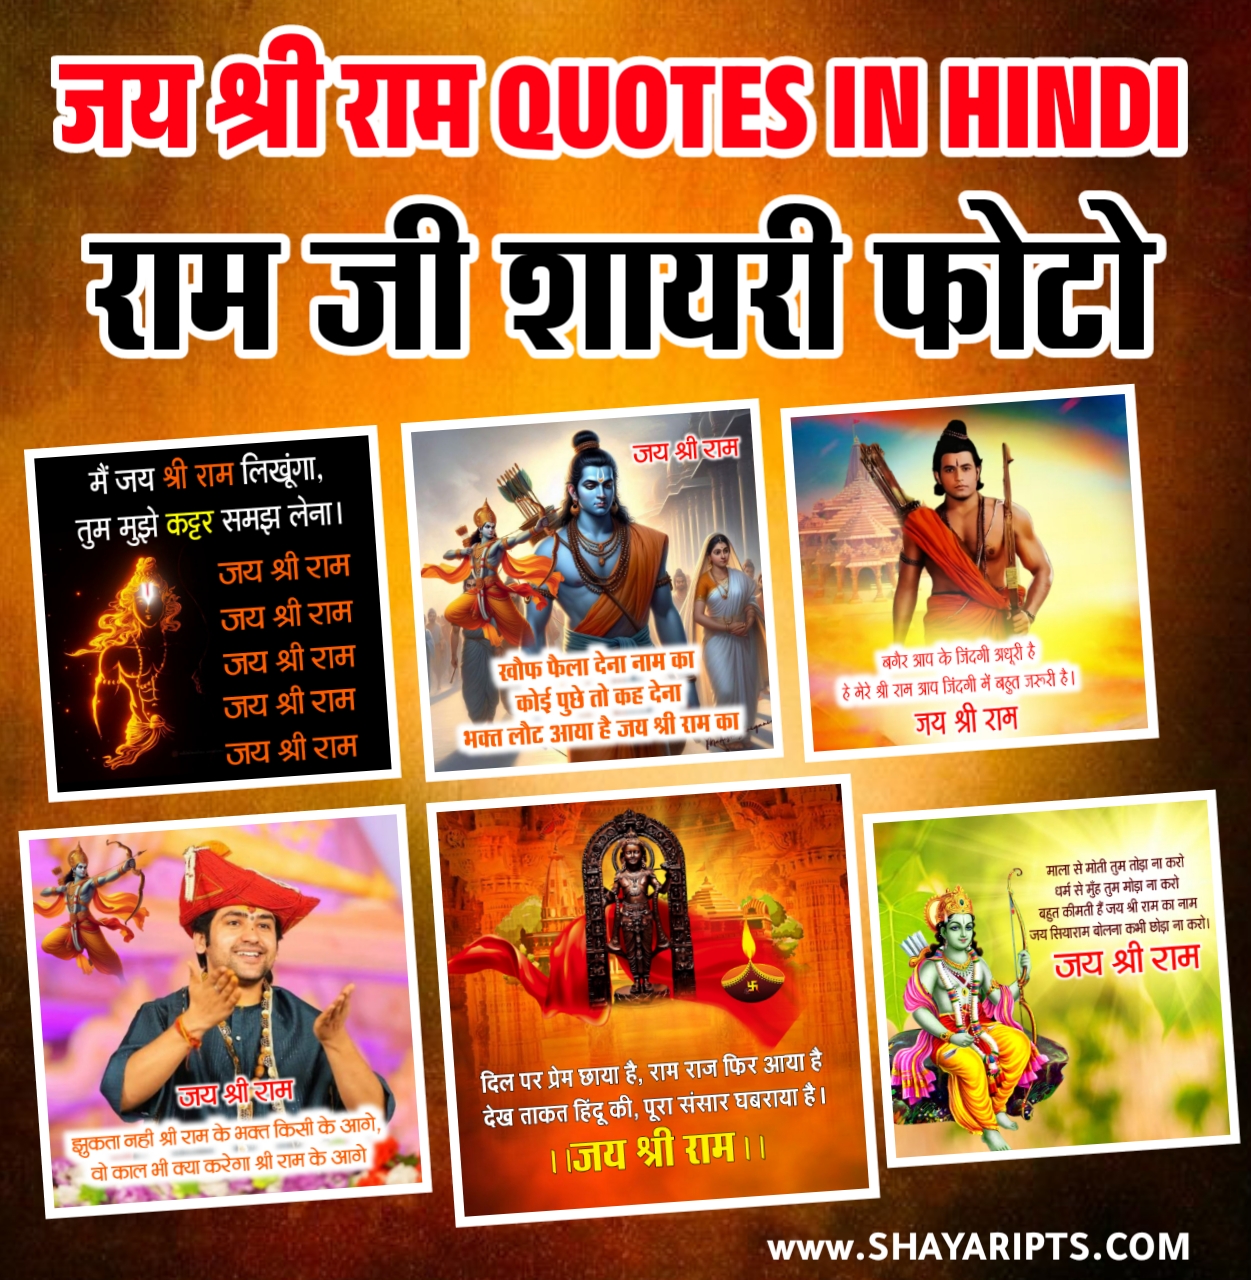 god ram quotes in hindi|  Jay Shri Ram shayari quotes in Hindi| ram ji shayari photo| जय श्री राम quotes in hindi | shree ram ji ki shayari